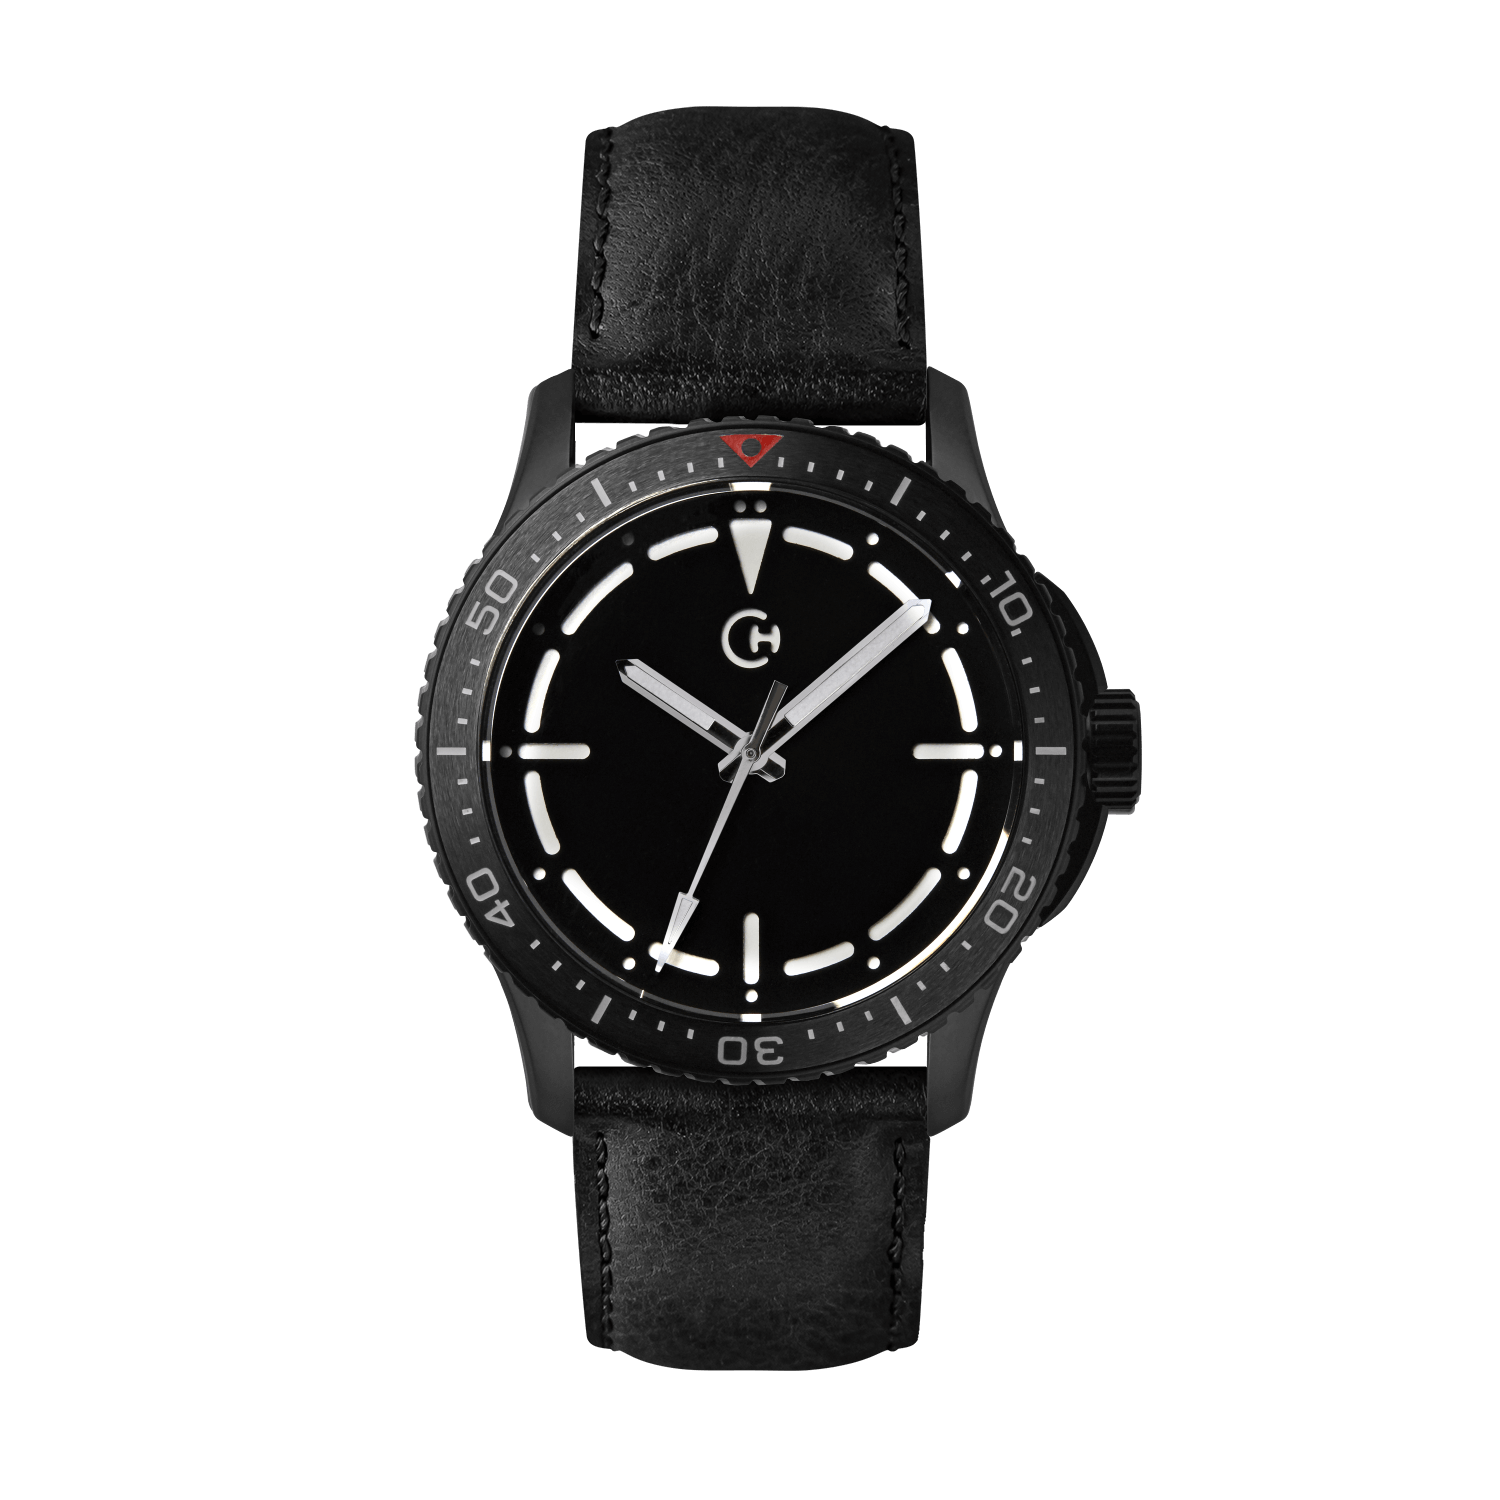 SeaQuest Dive černý kožený řemínek, 22mm, rychloupínací stěžejka, potápěčské hodinky Chronotechna bílý číselník, DLC pouzdro